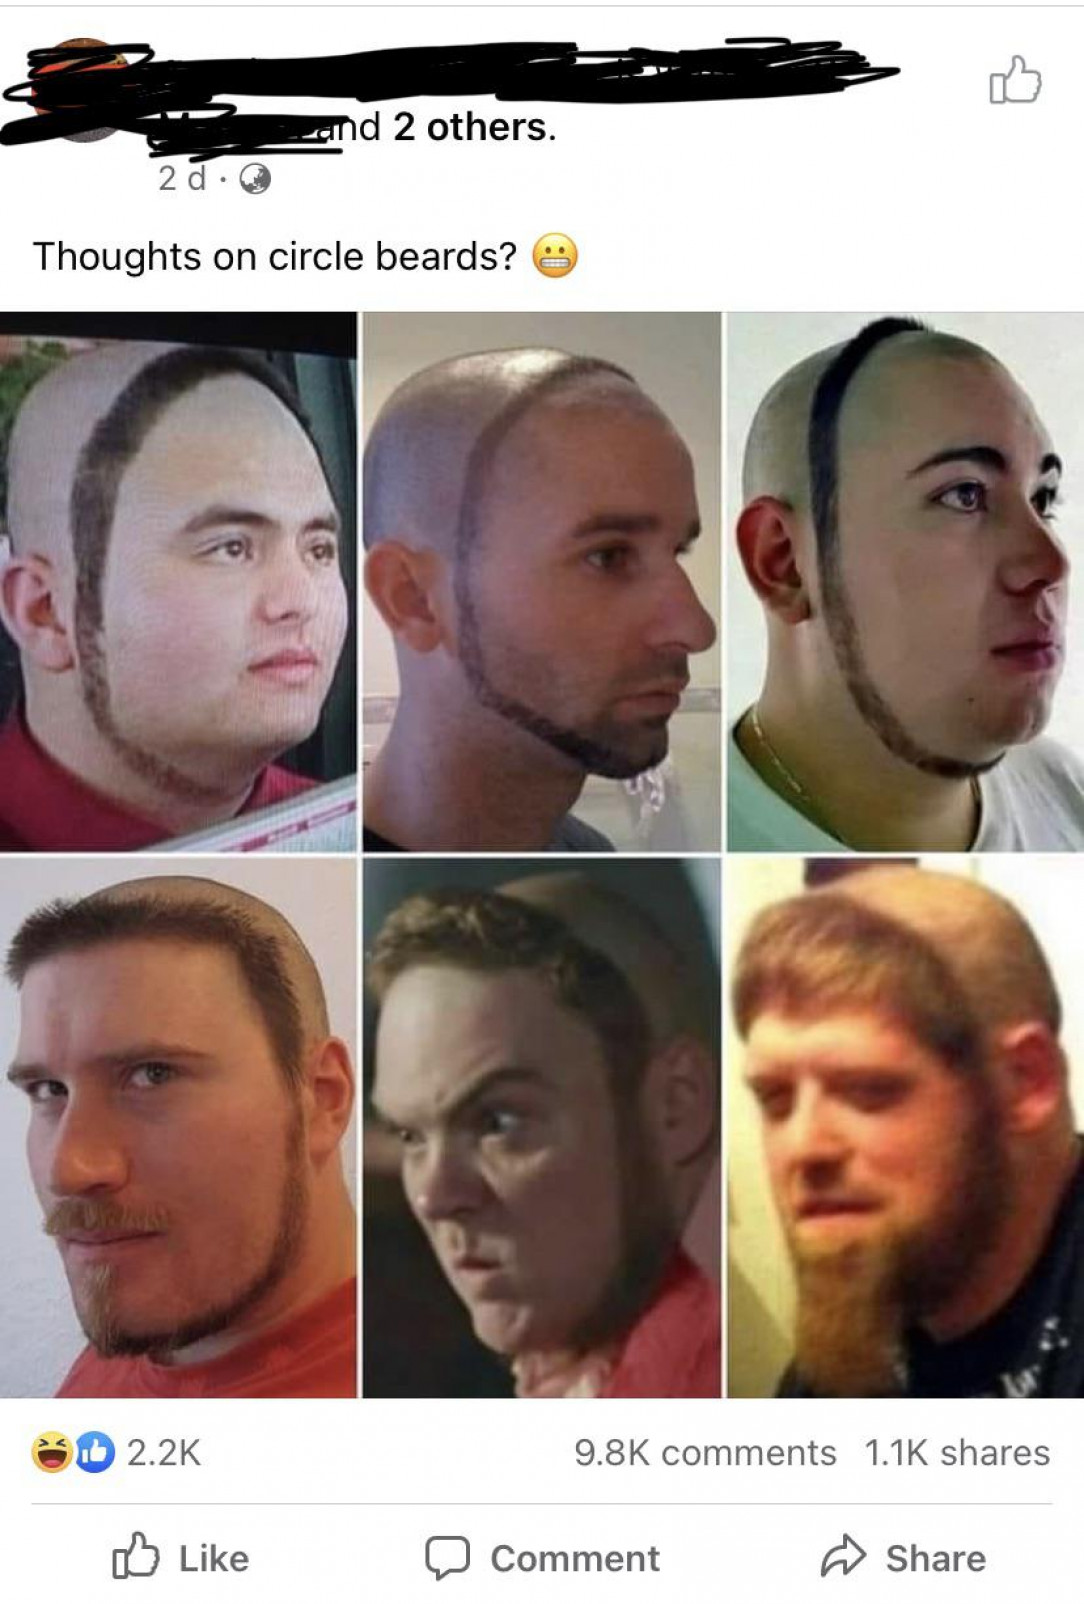 Circle beards